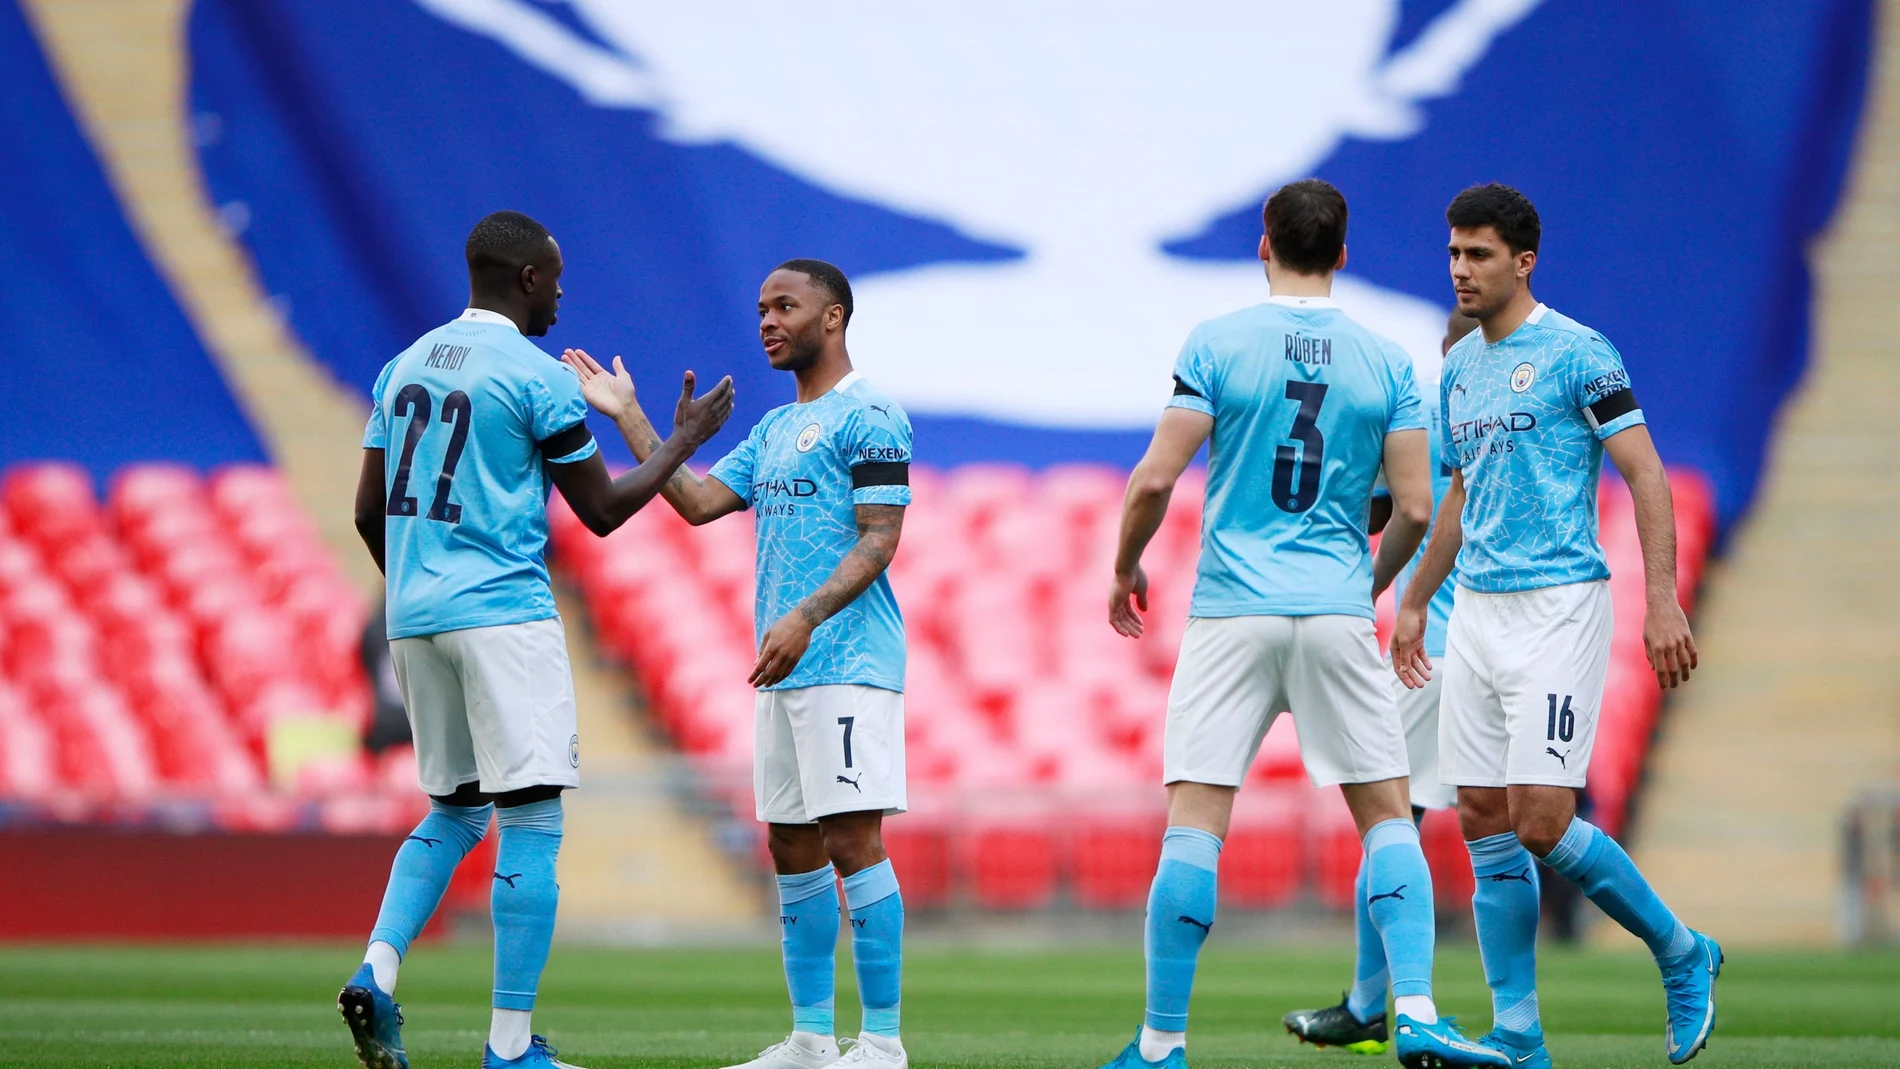 Los jugadores del Manchester City celebran un gol.